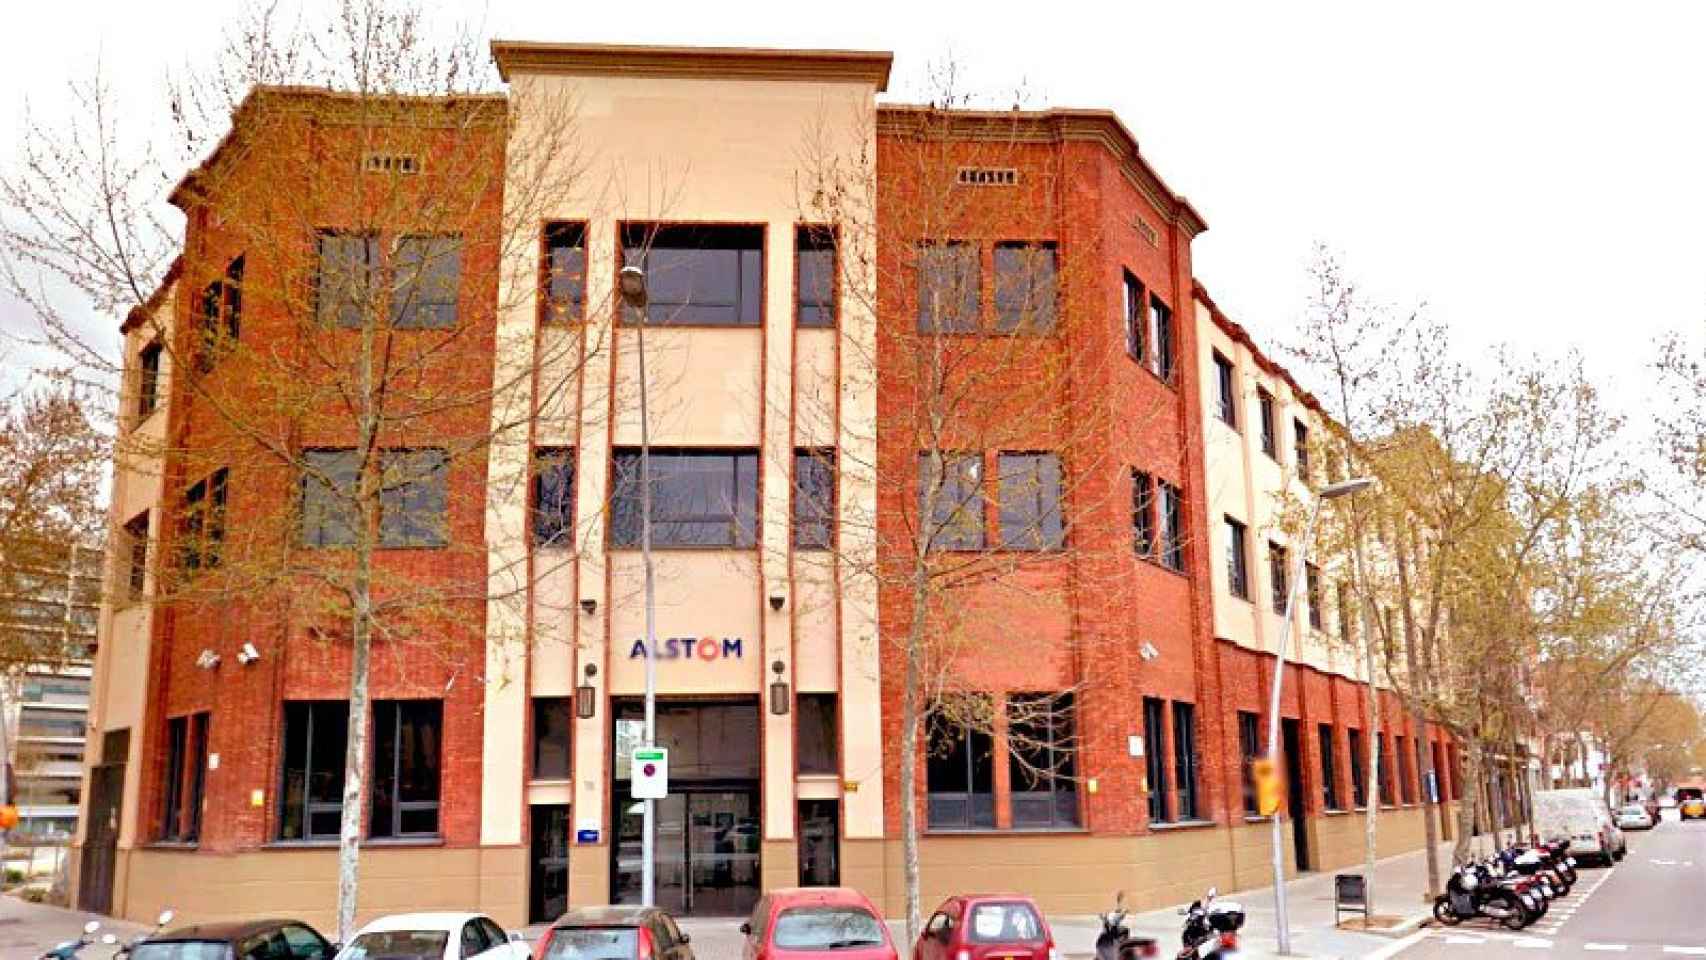 Alstom instaló la sede de la división eólica en Barcelona en 2007 tras comprar la cooperativa Ecotécnia.